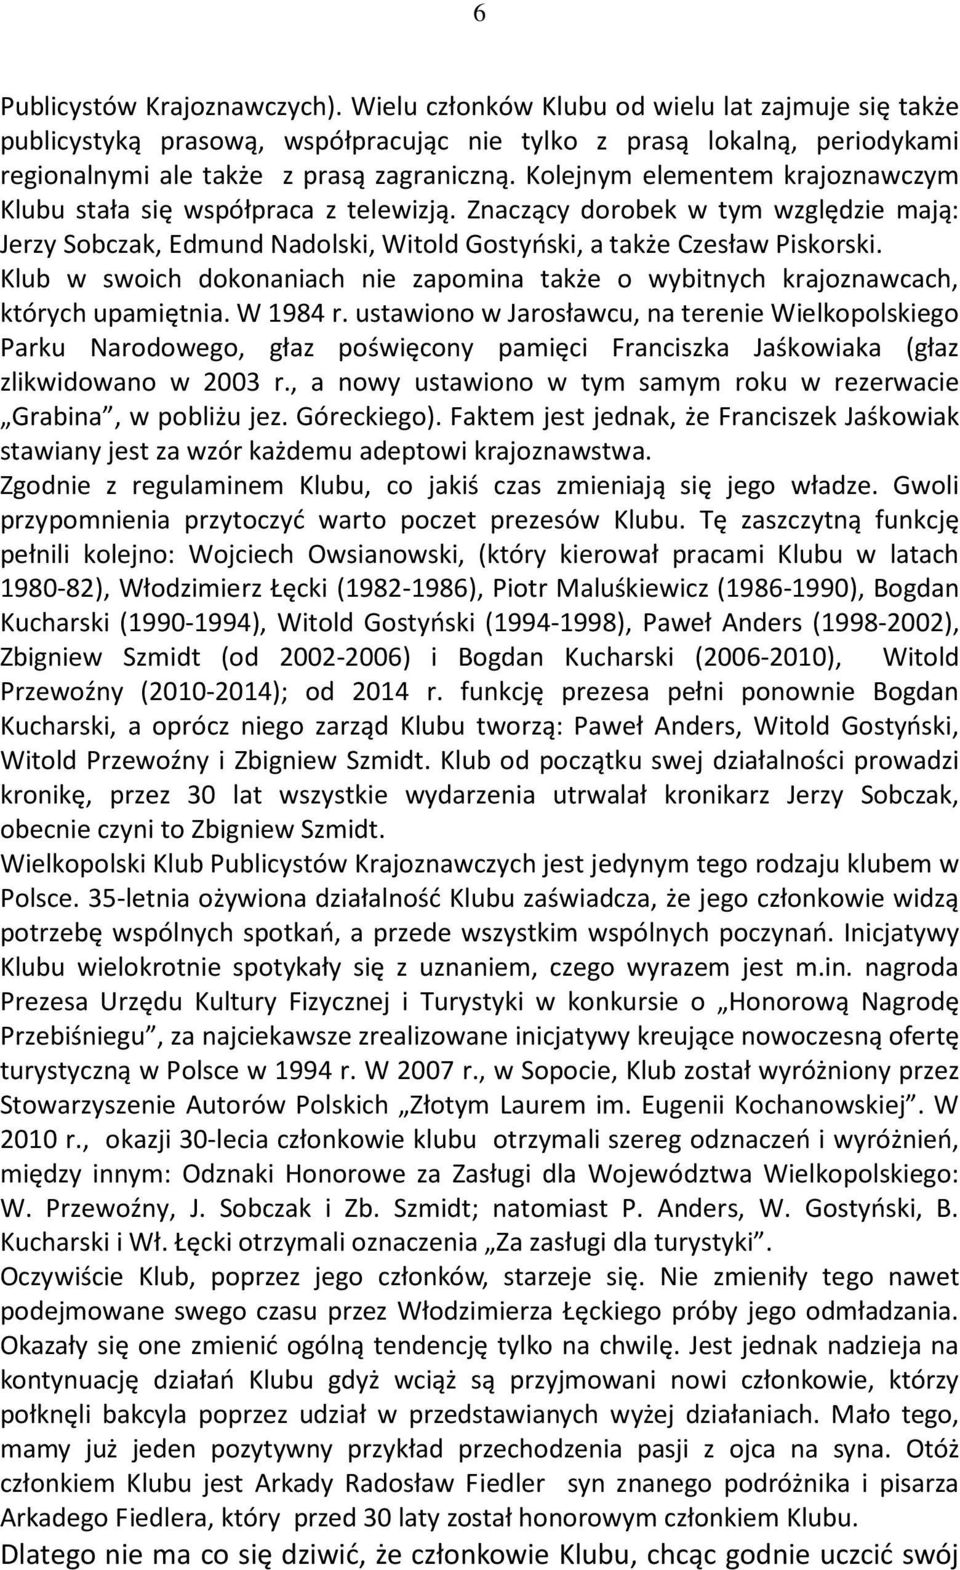 Kolejnym elementem krajoznawczym Klubu stała się współpraca z telewizją. Znaczący dorobek w tym względzie mają: Jerzy Sobczak, Edmund Nadolski, Witold Gostyński, a także Czesław Piskorski.